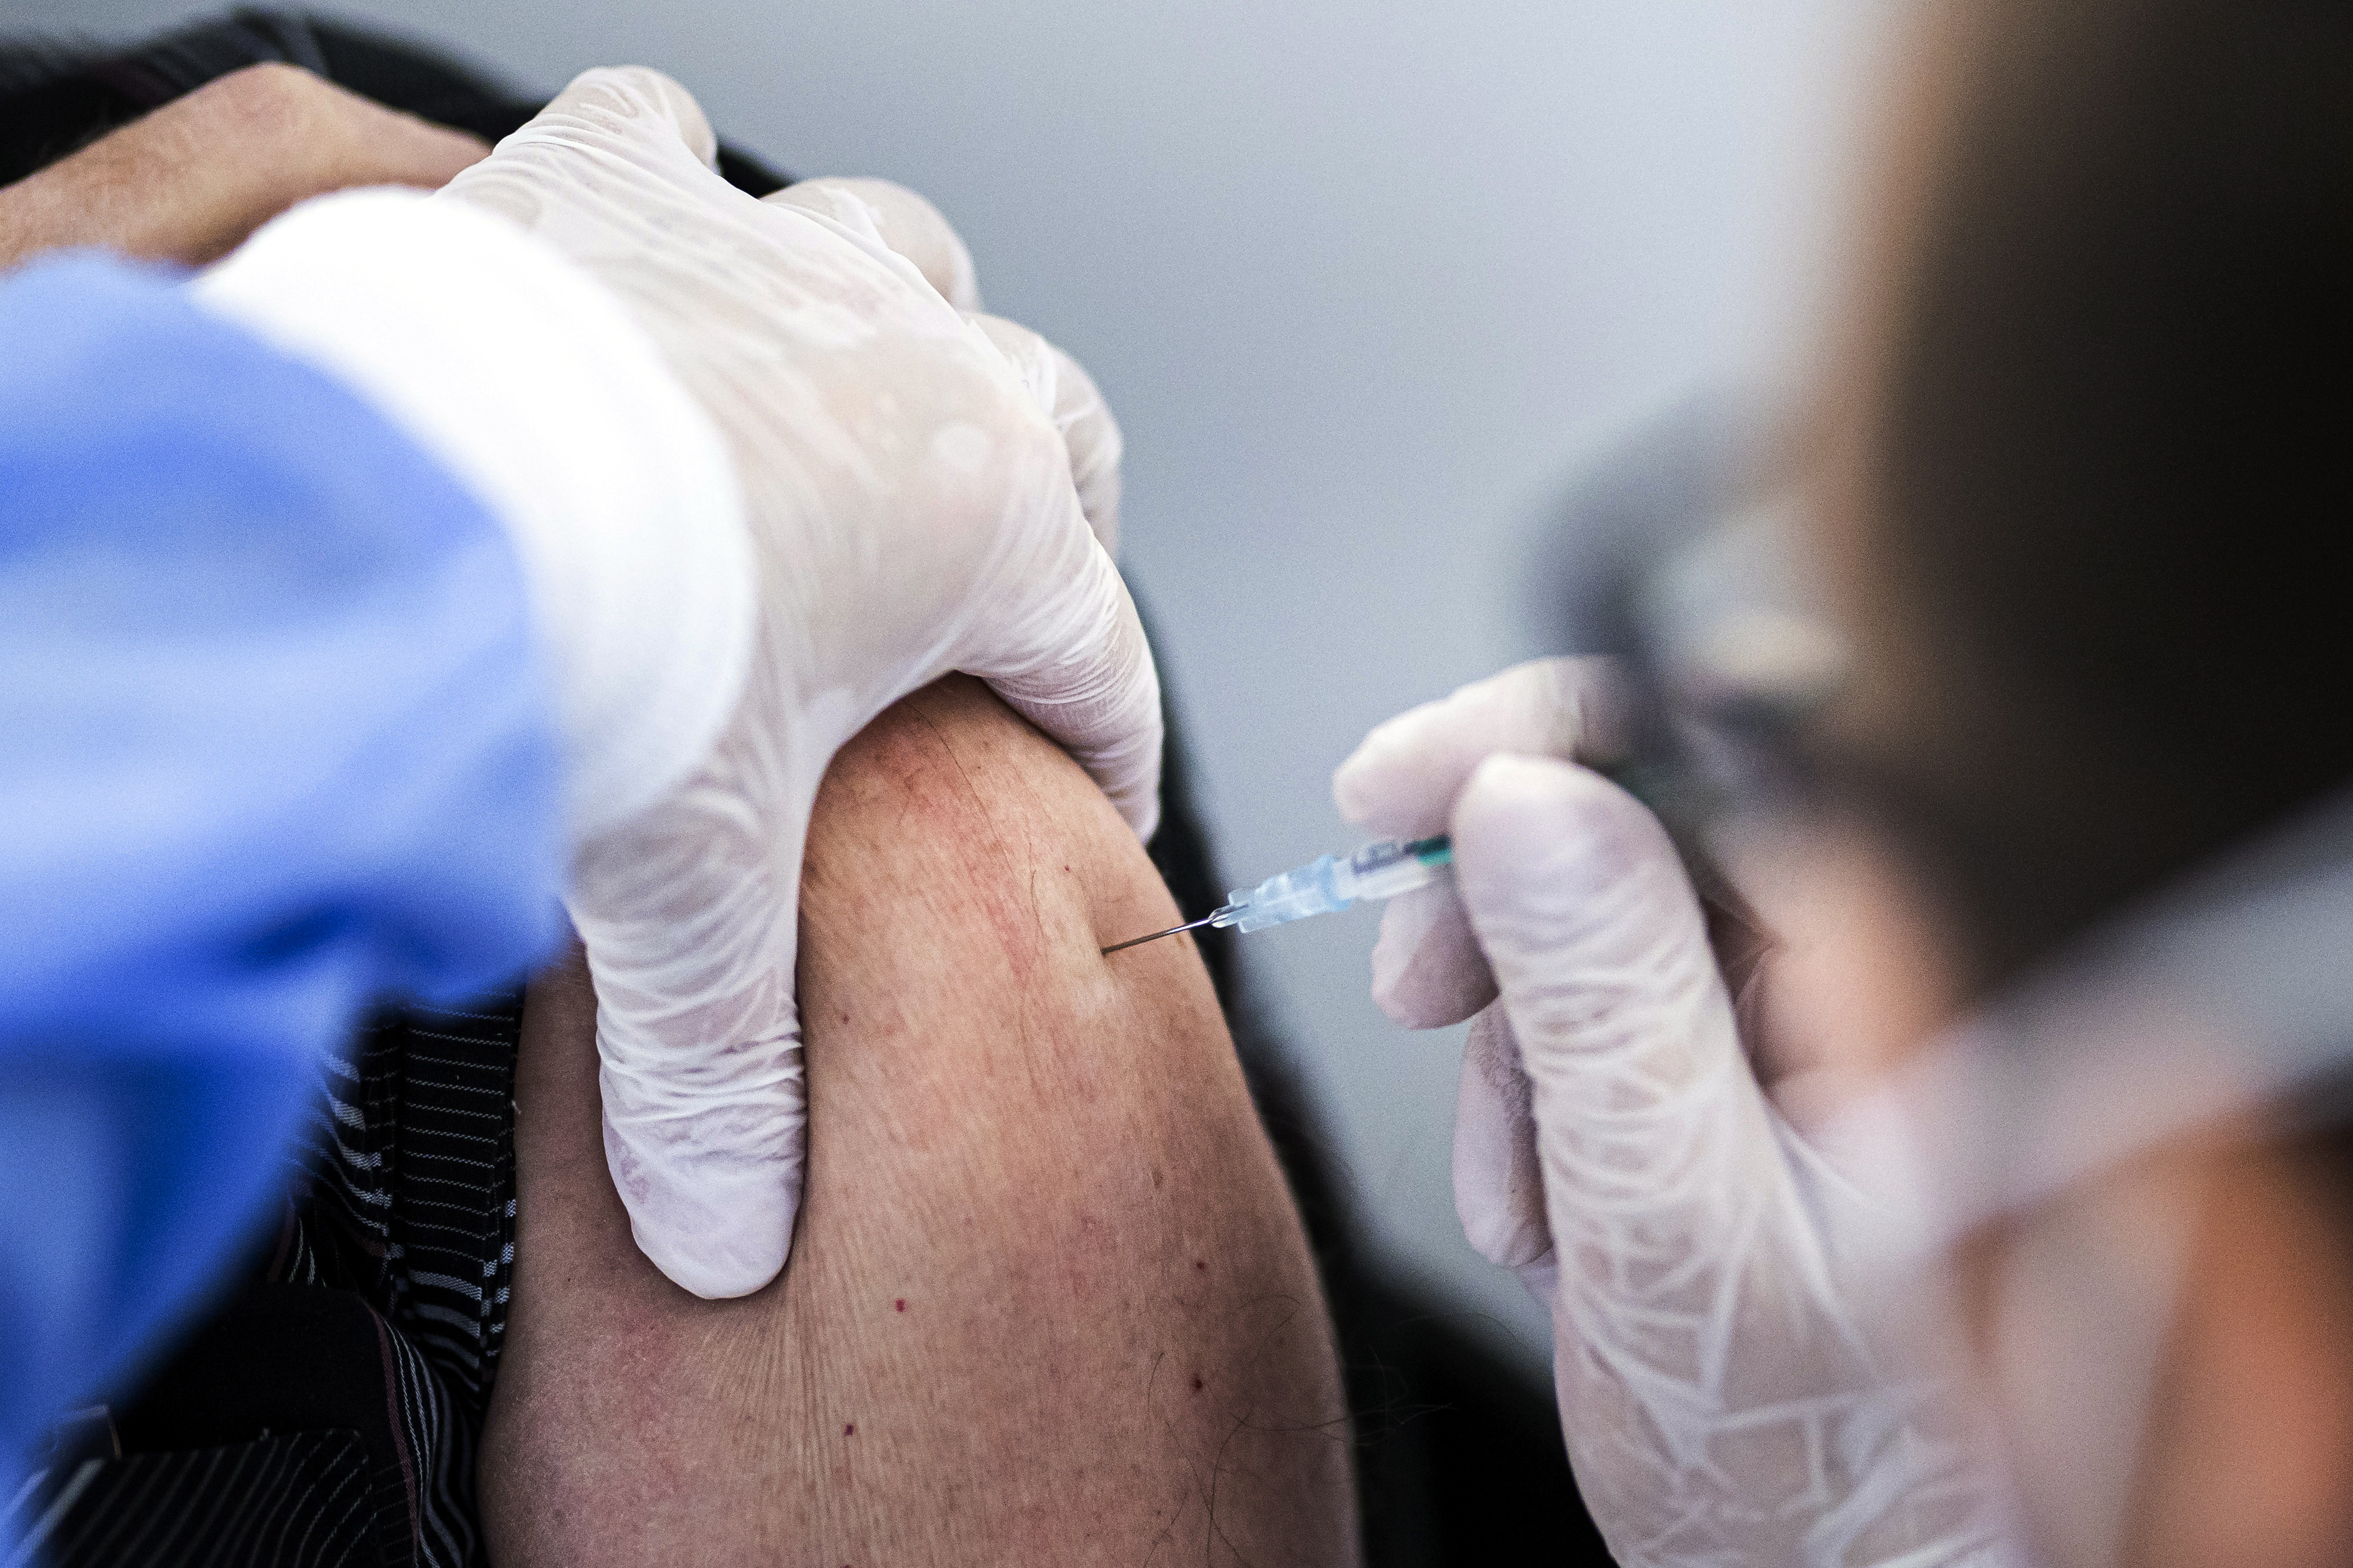 Impfung gegen Covid-19: Detailaufnahme von der Injektion des Impfstoffes in den Oberarm einer Frau.